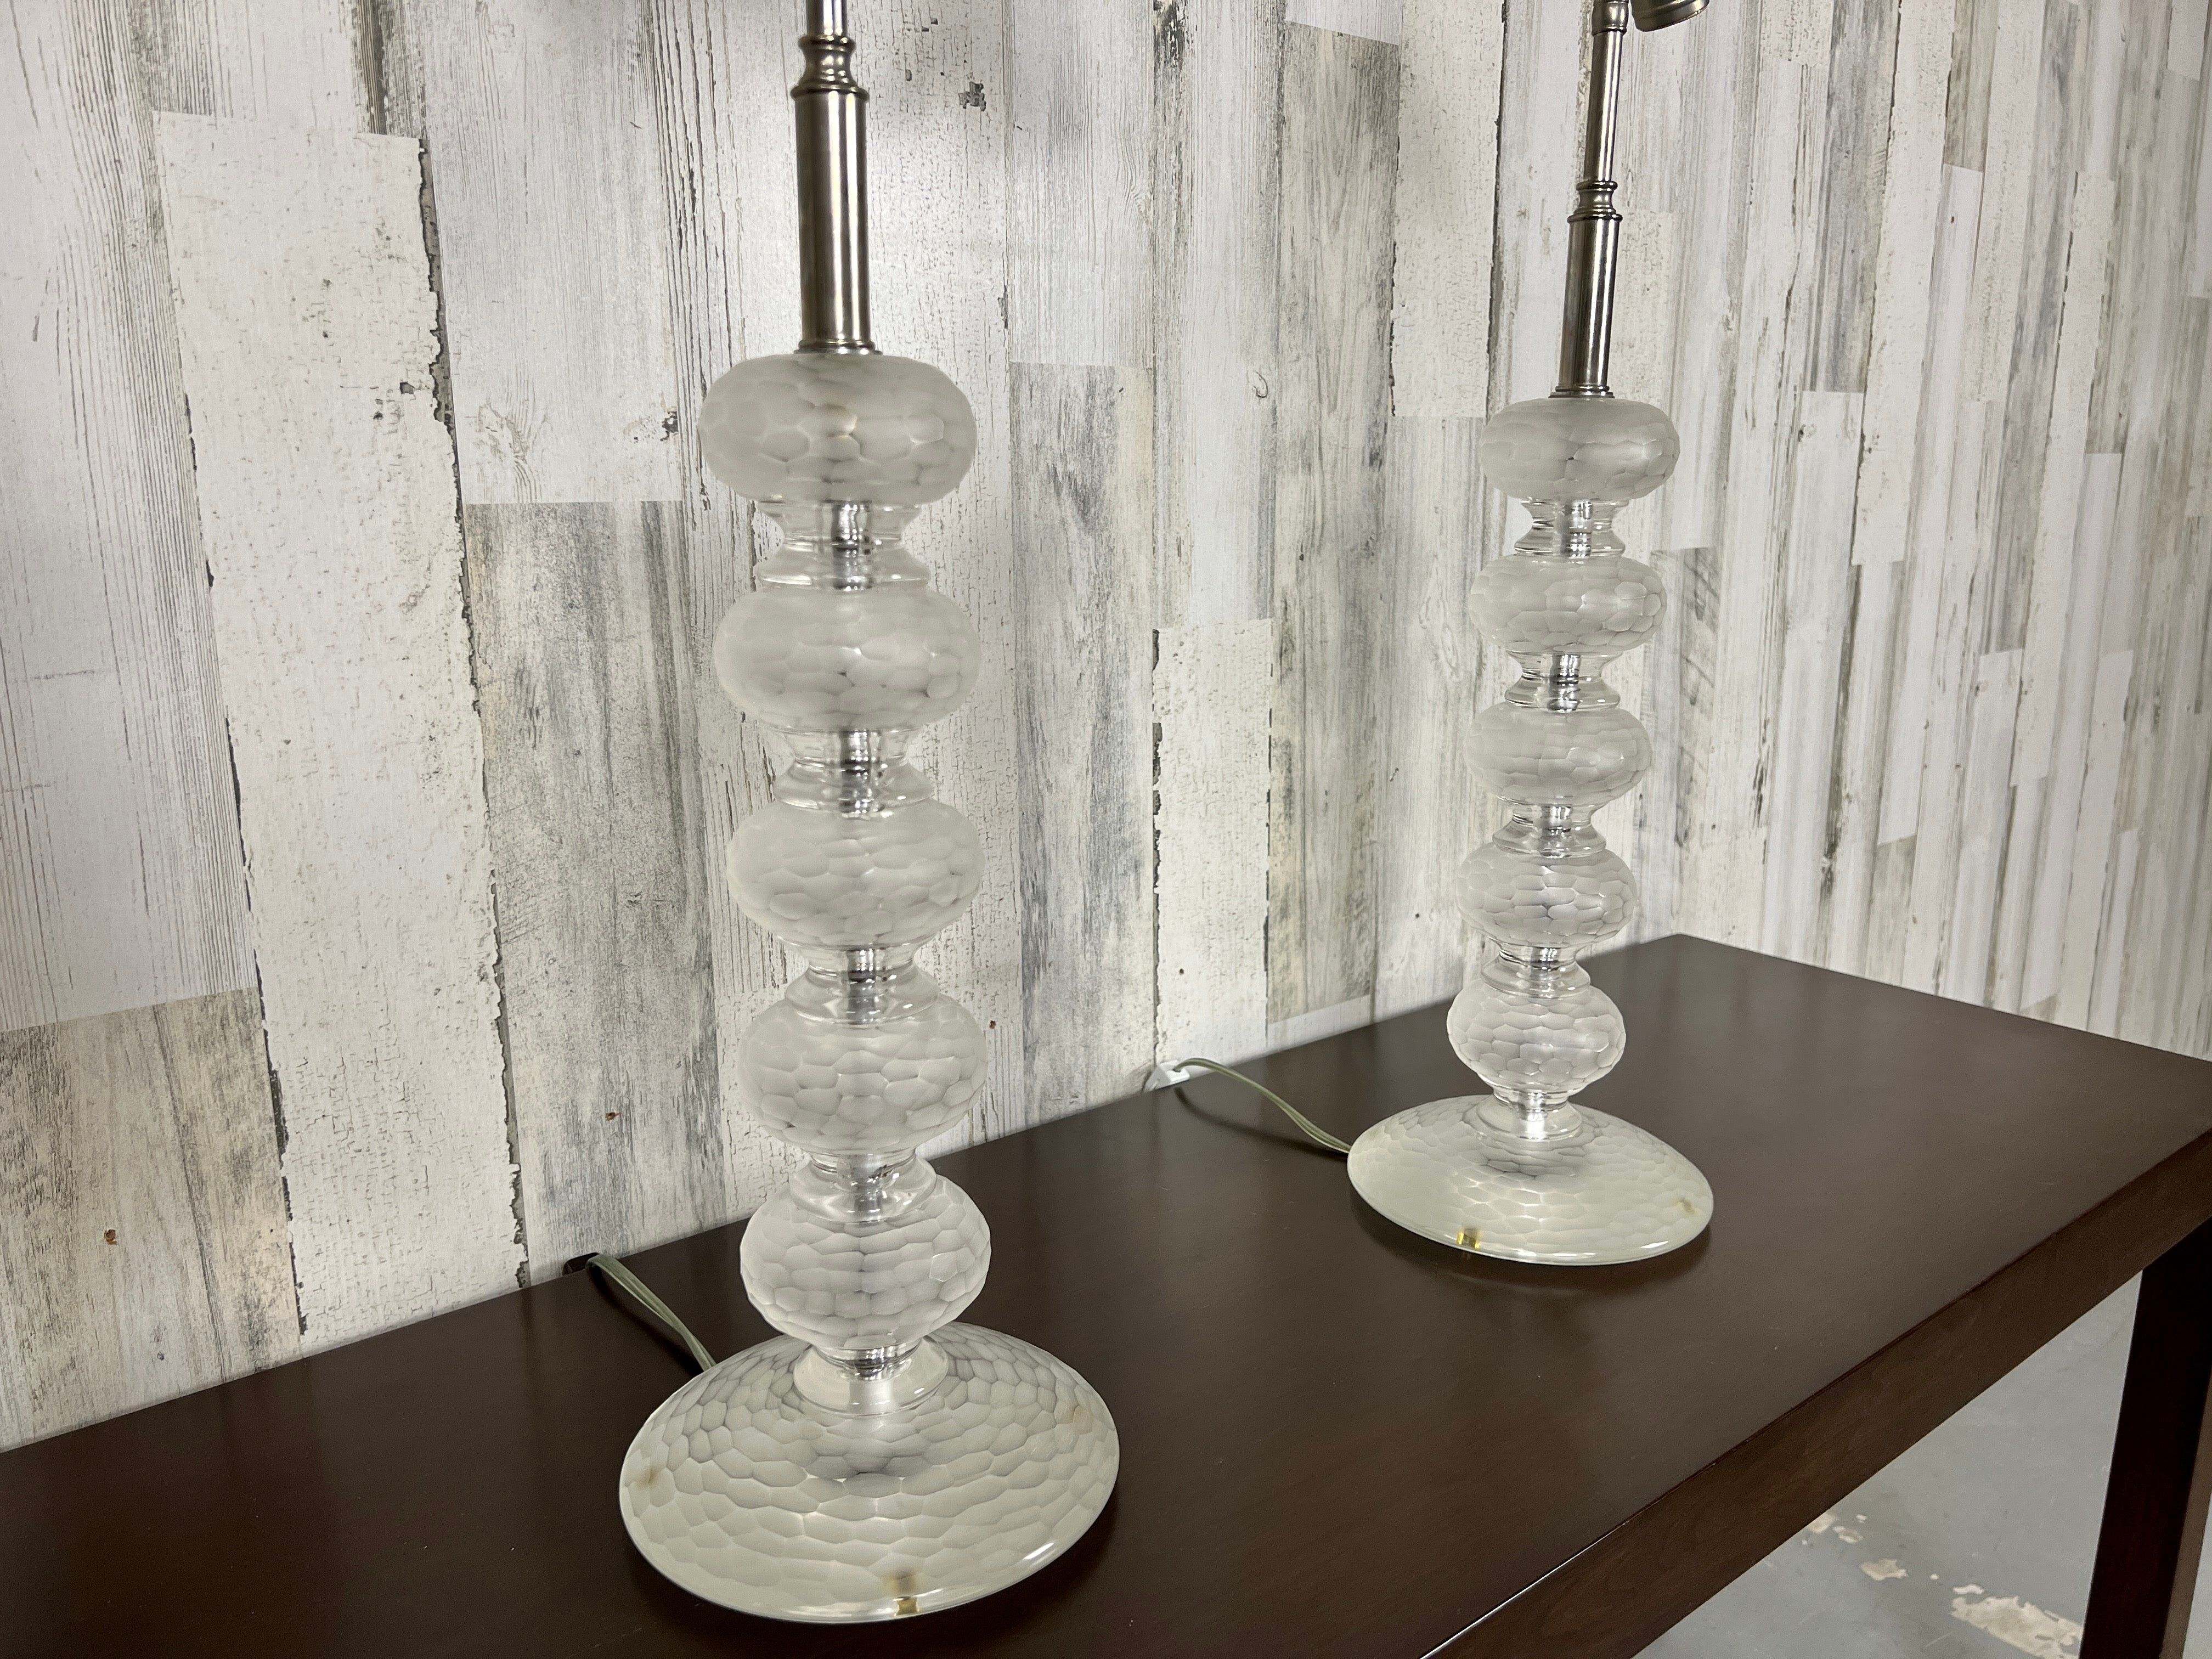 Ein Paar stilvolle Lampen aus facettiertem Murano-Glas mit vernickelten Beschlägen, beide auf der Innenseite des Sockels signiert Cenedese.
Die Lampenschirme sind nicht enthalten.